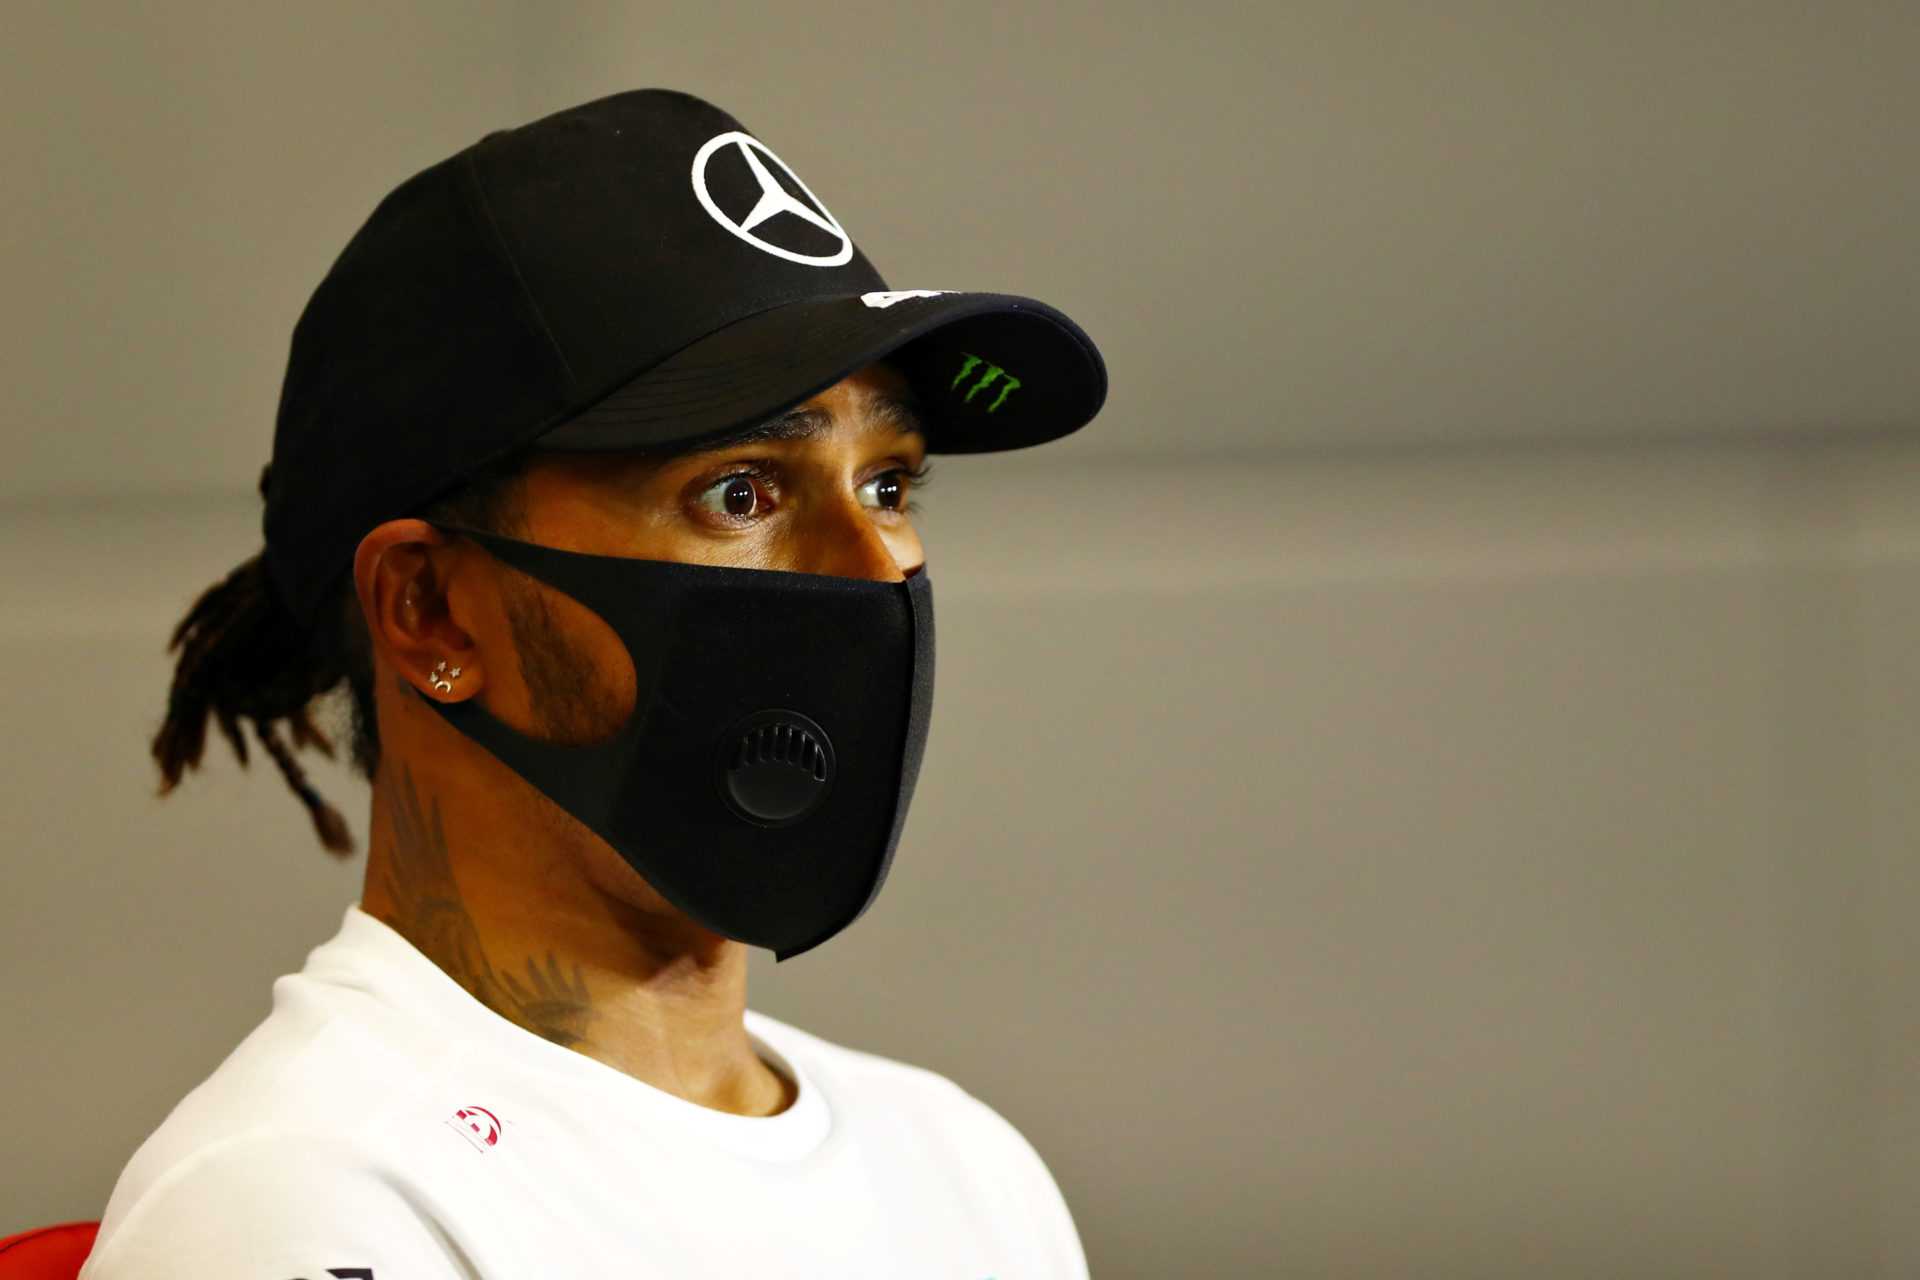 RÉVÉLÉ: Le malentendu entre Lewis Hamilton et Mercedes qui a conduit à la sanction de Sotchi